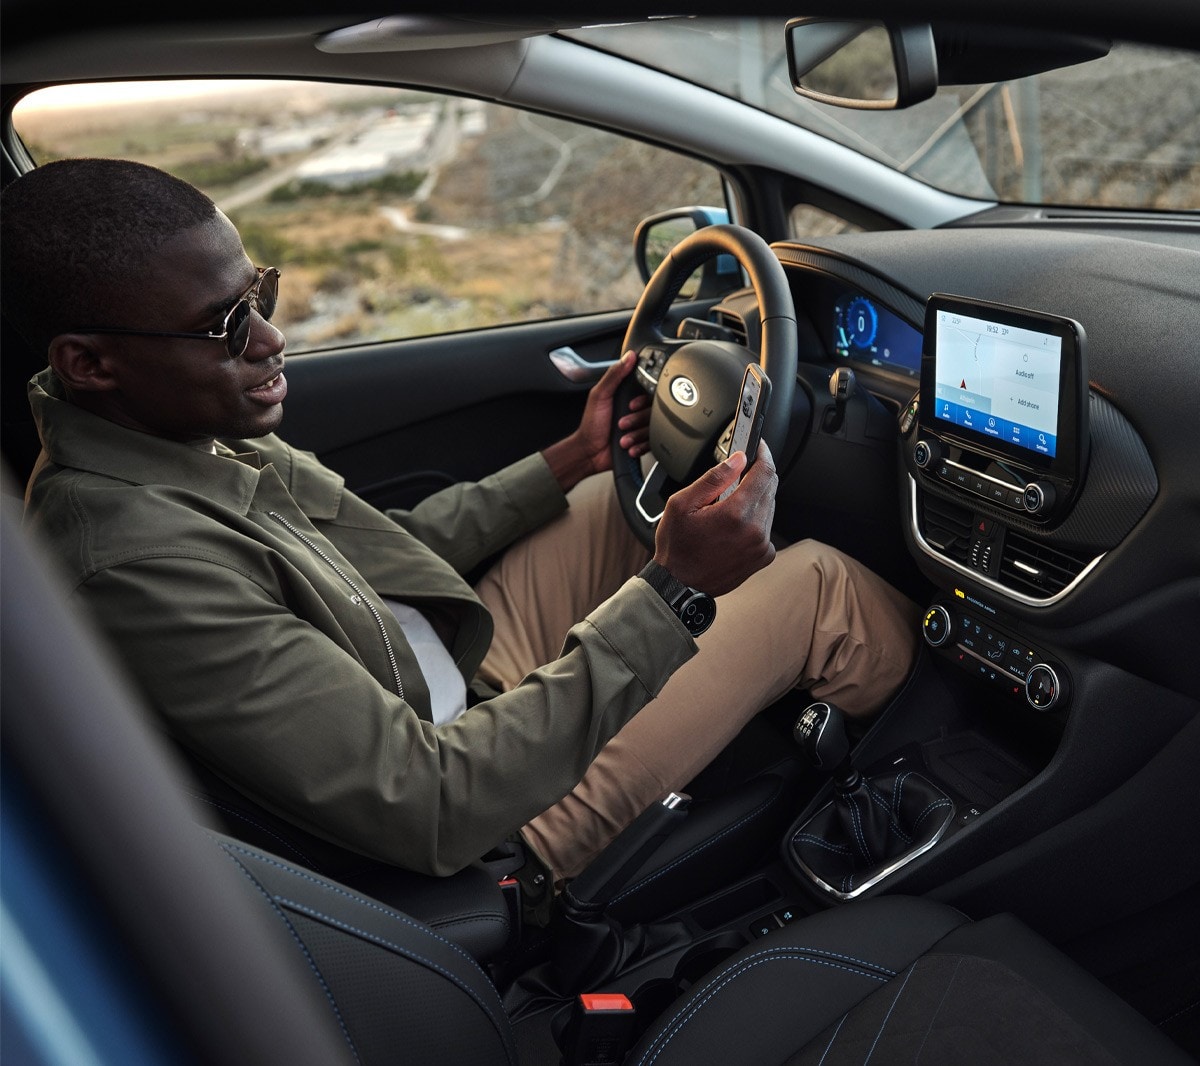 Ford Fiesta Innenraumansicht. Ein Mann auf dem Fahrersitz schaut auf sein Smartphone.